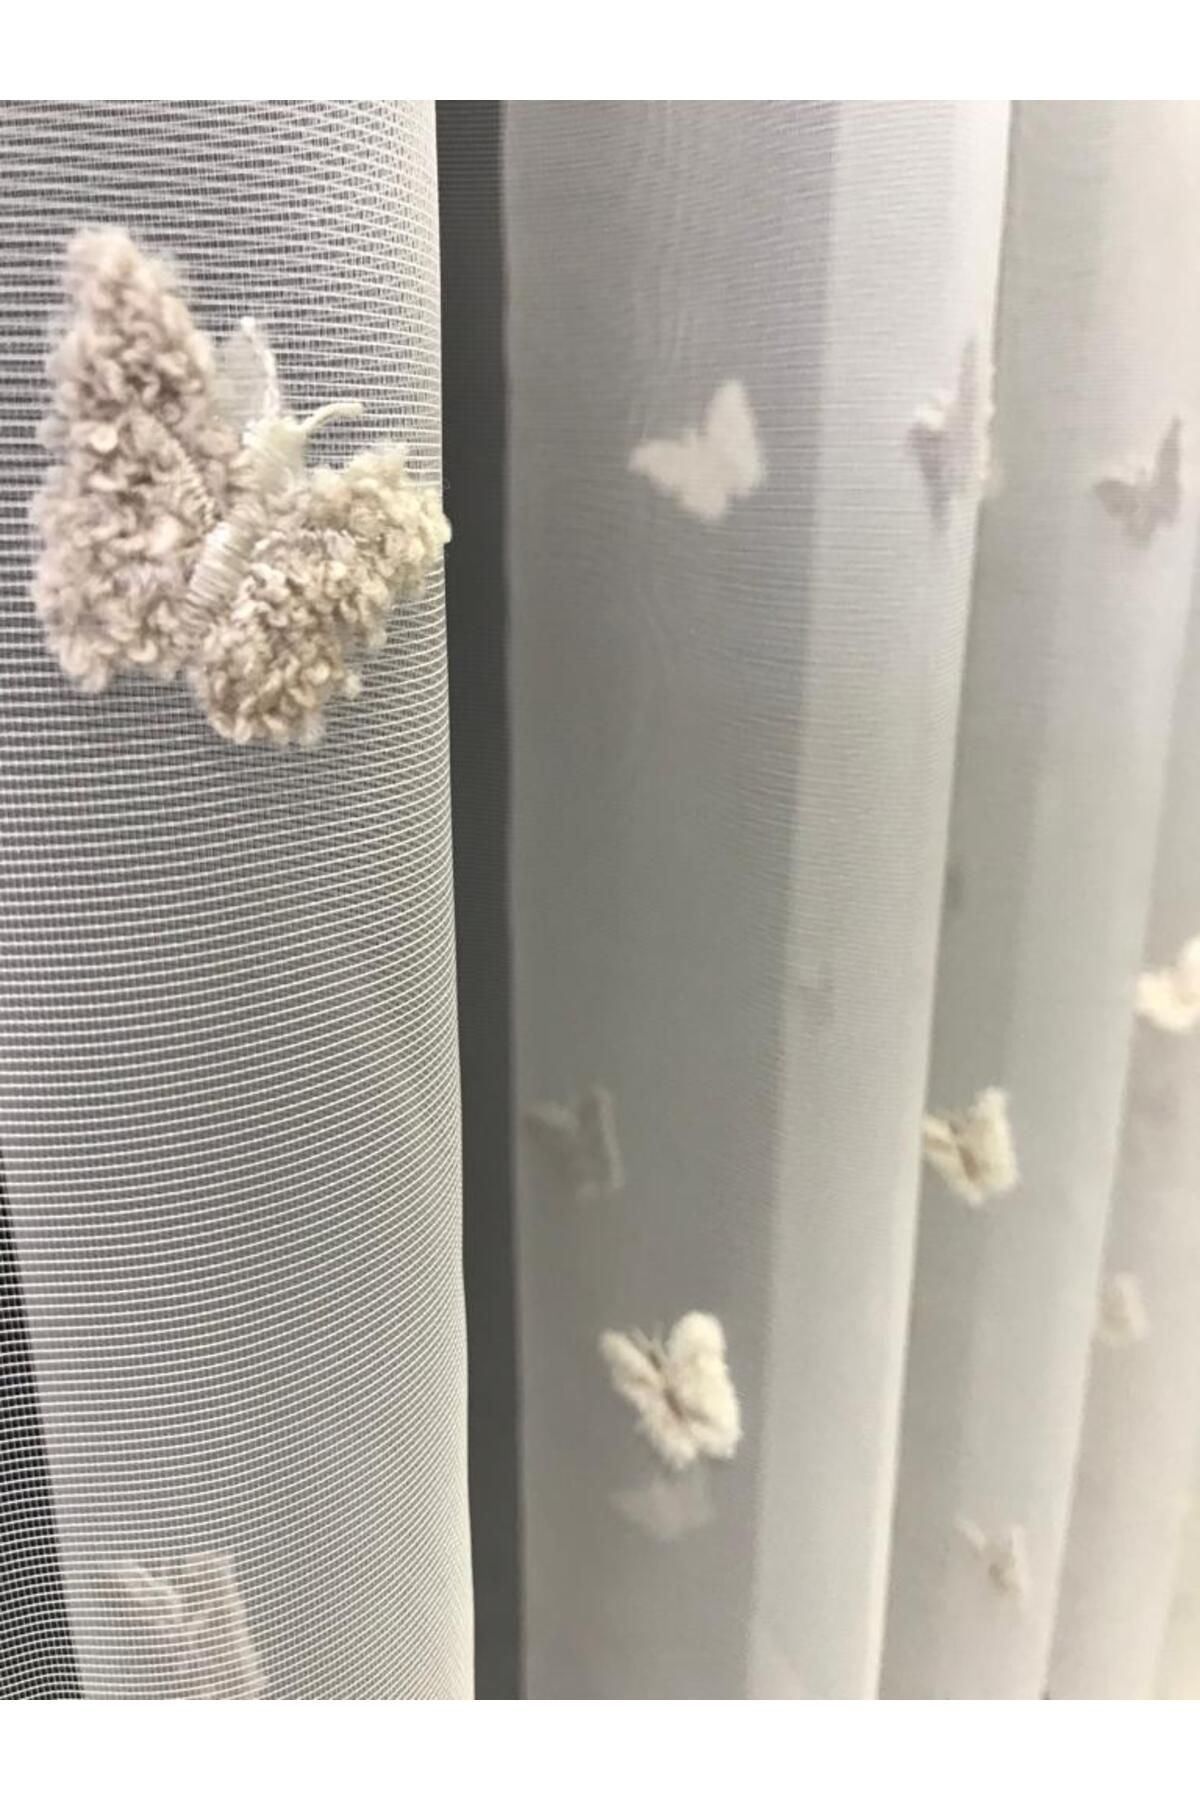 özdeğer home kelebek tül perde krem taş renkler nakış işleme kelebek tül perde çocuk odası perdesi salon perdesi